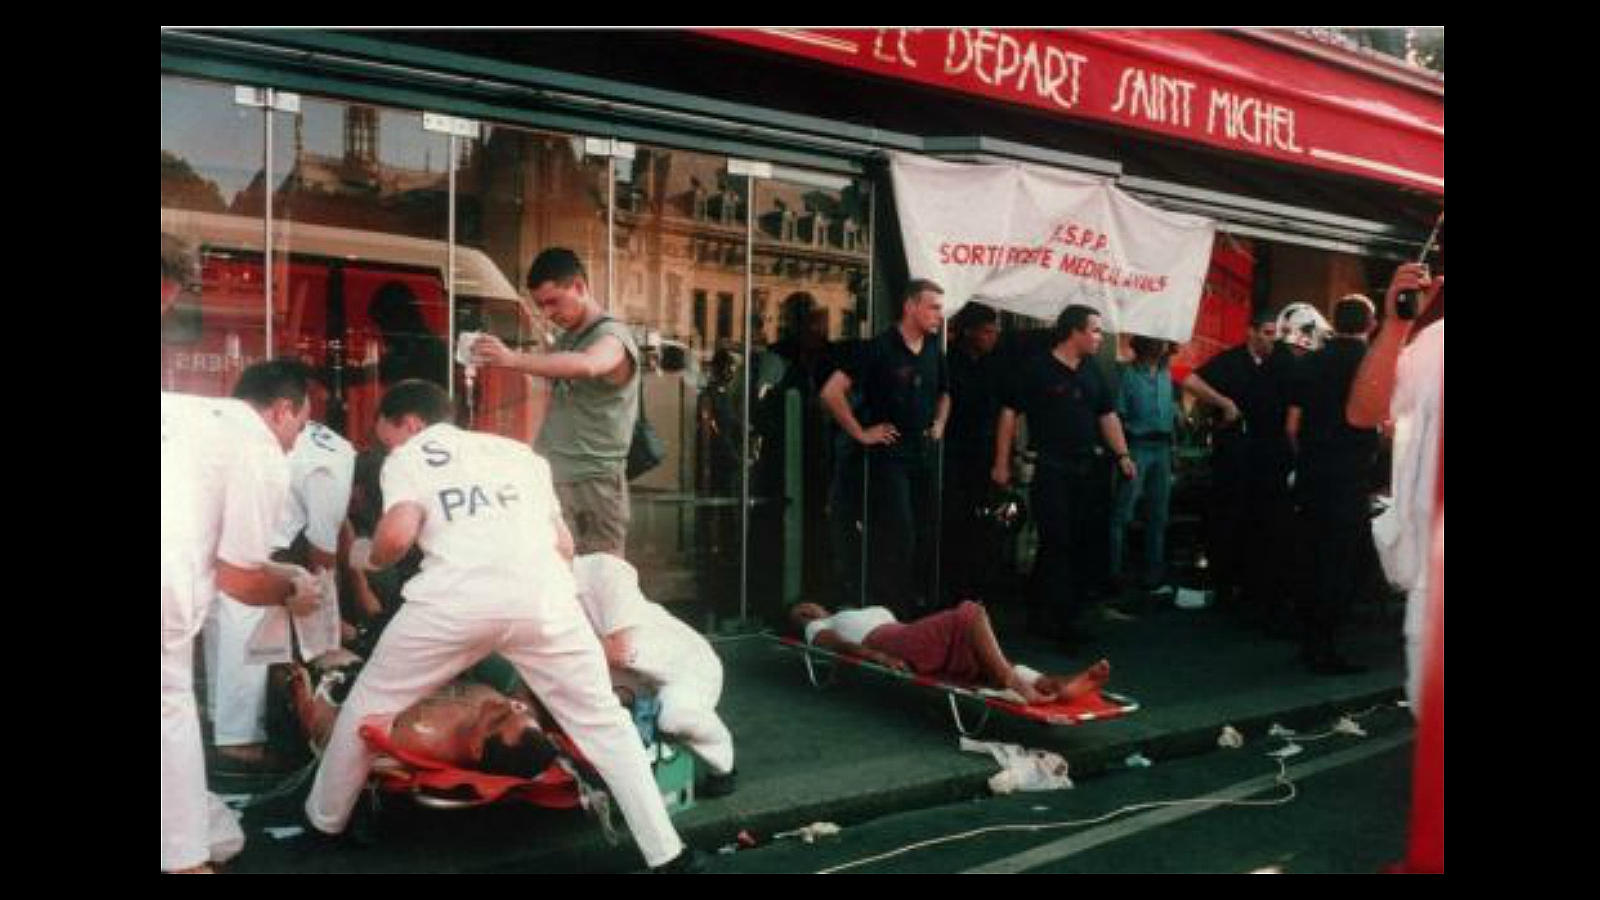 El 25 de julio de 1995, ocho muertos en el estallido de una bomba en un tren suburbano en la estación Saint Michel, en el céntrico Barrio Latino de París. El atentado, atribuido a extremistas islamistas argelinos, es el más mortífero de una ola de ataques terroristas en el verano boreal de 1995 que causó más de 200 heridos